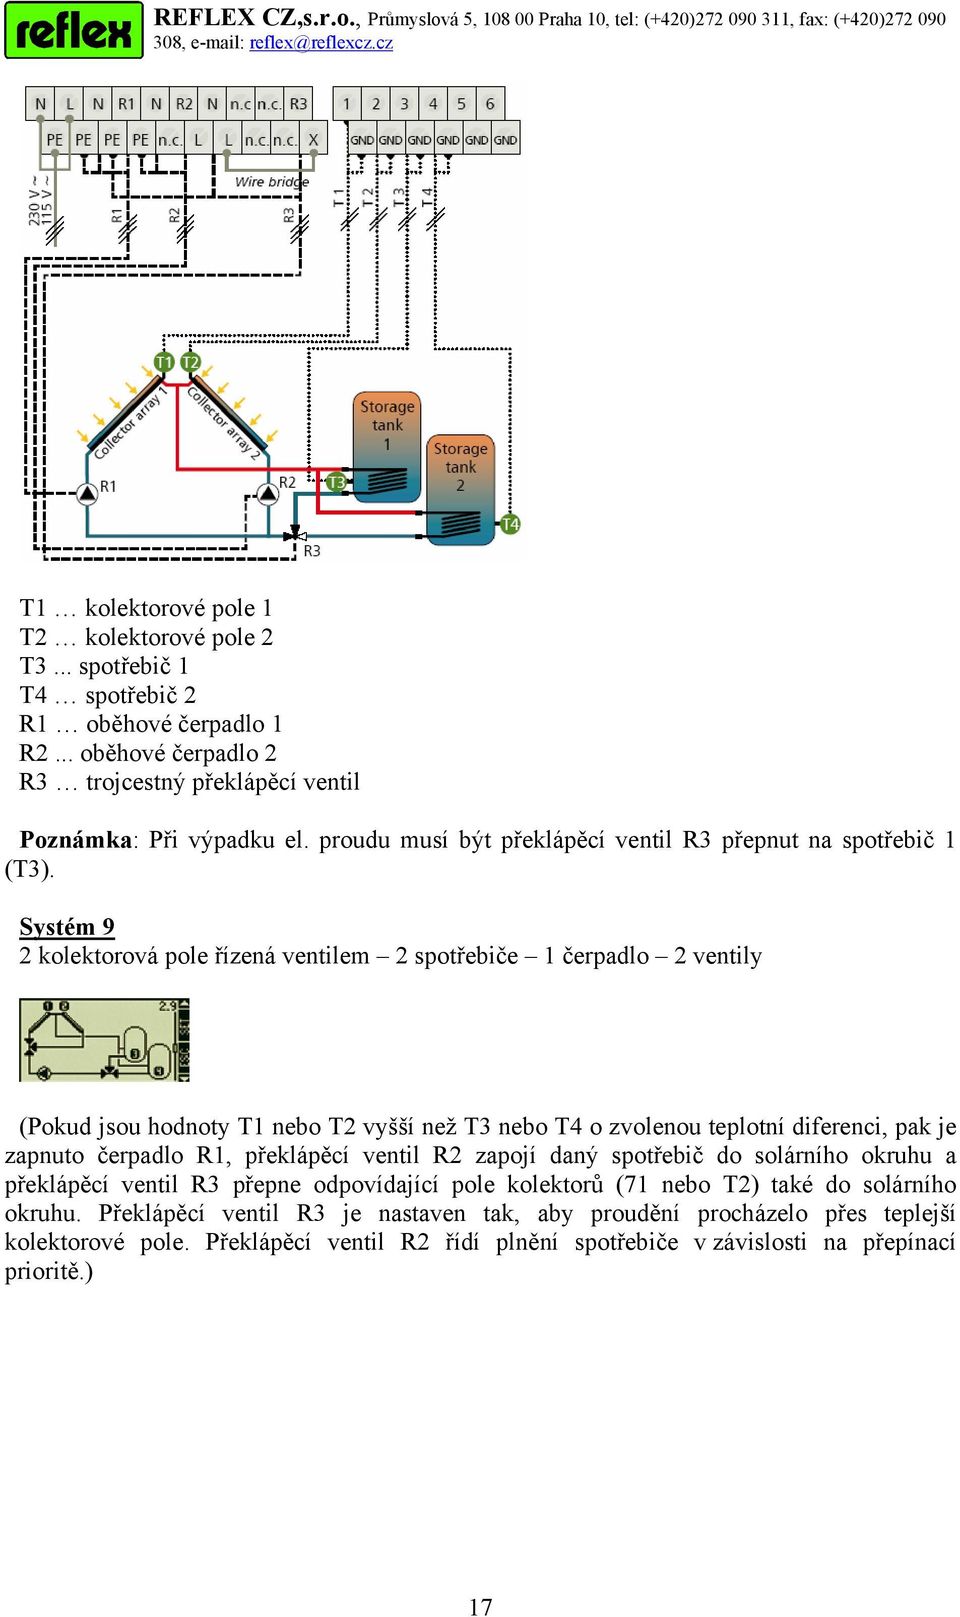 Systém 9 2 kolektorová pole řízená ventilem 2 spotřebiče 1 čerpadlo 2 ventily (Pokud jsou hodnoty T1 nebo T2 vyšší než T3 nebo T4 o zvolenou teplotní diferenci, pak je zapnuto čerpadlo R1,